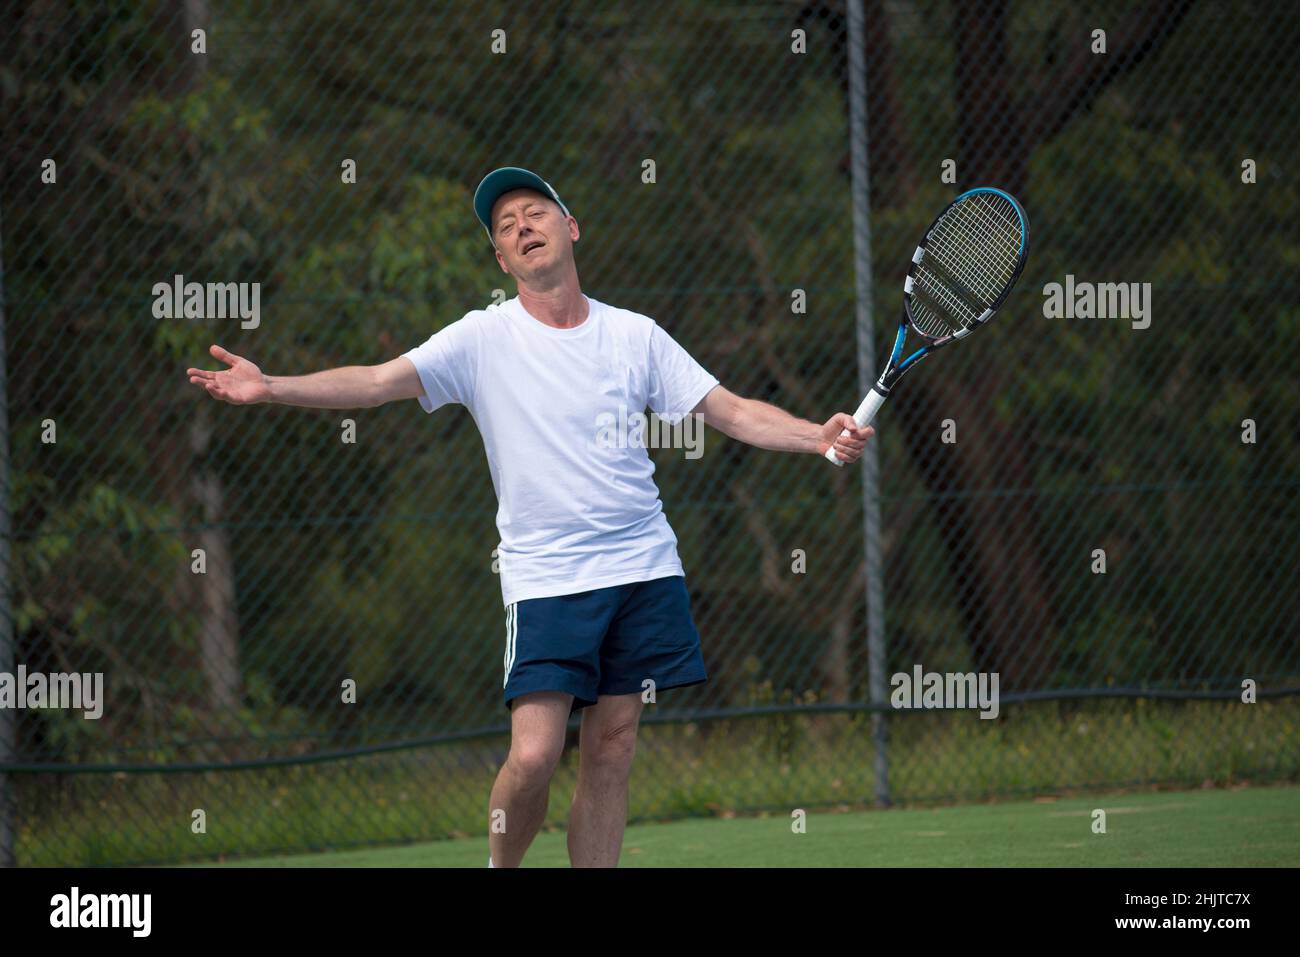 Un uomo australiano negli anni Cinquanta o Sessanta si erge su un campo da tennis locale, a braccia separate, facendo appello all'umpire (fotocamera) dopo una decisione contro di lui Foto Stock